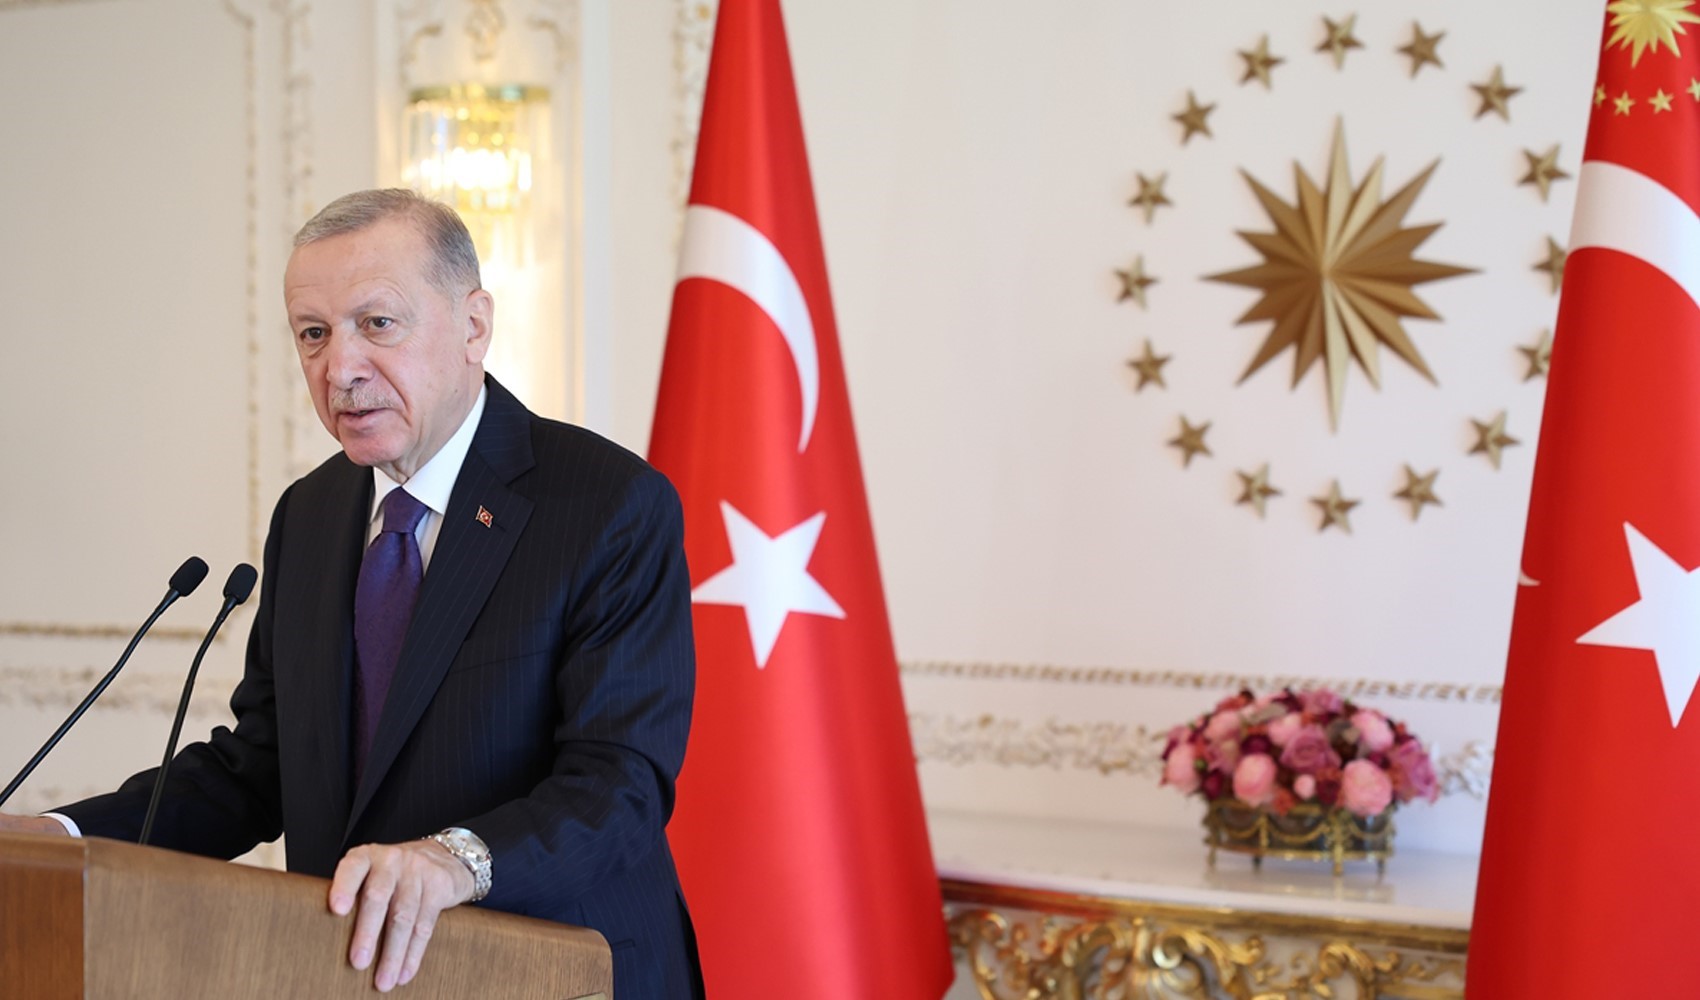 Cumhurbaşkanı ve AKP Genel Başkanı Recep Tayyip Erdoğan'dan Kobani Davası açıklaması: 'Protesto' değil, 'kalkışma'